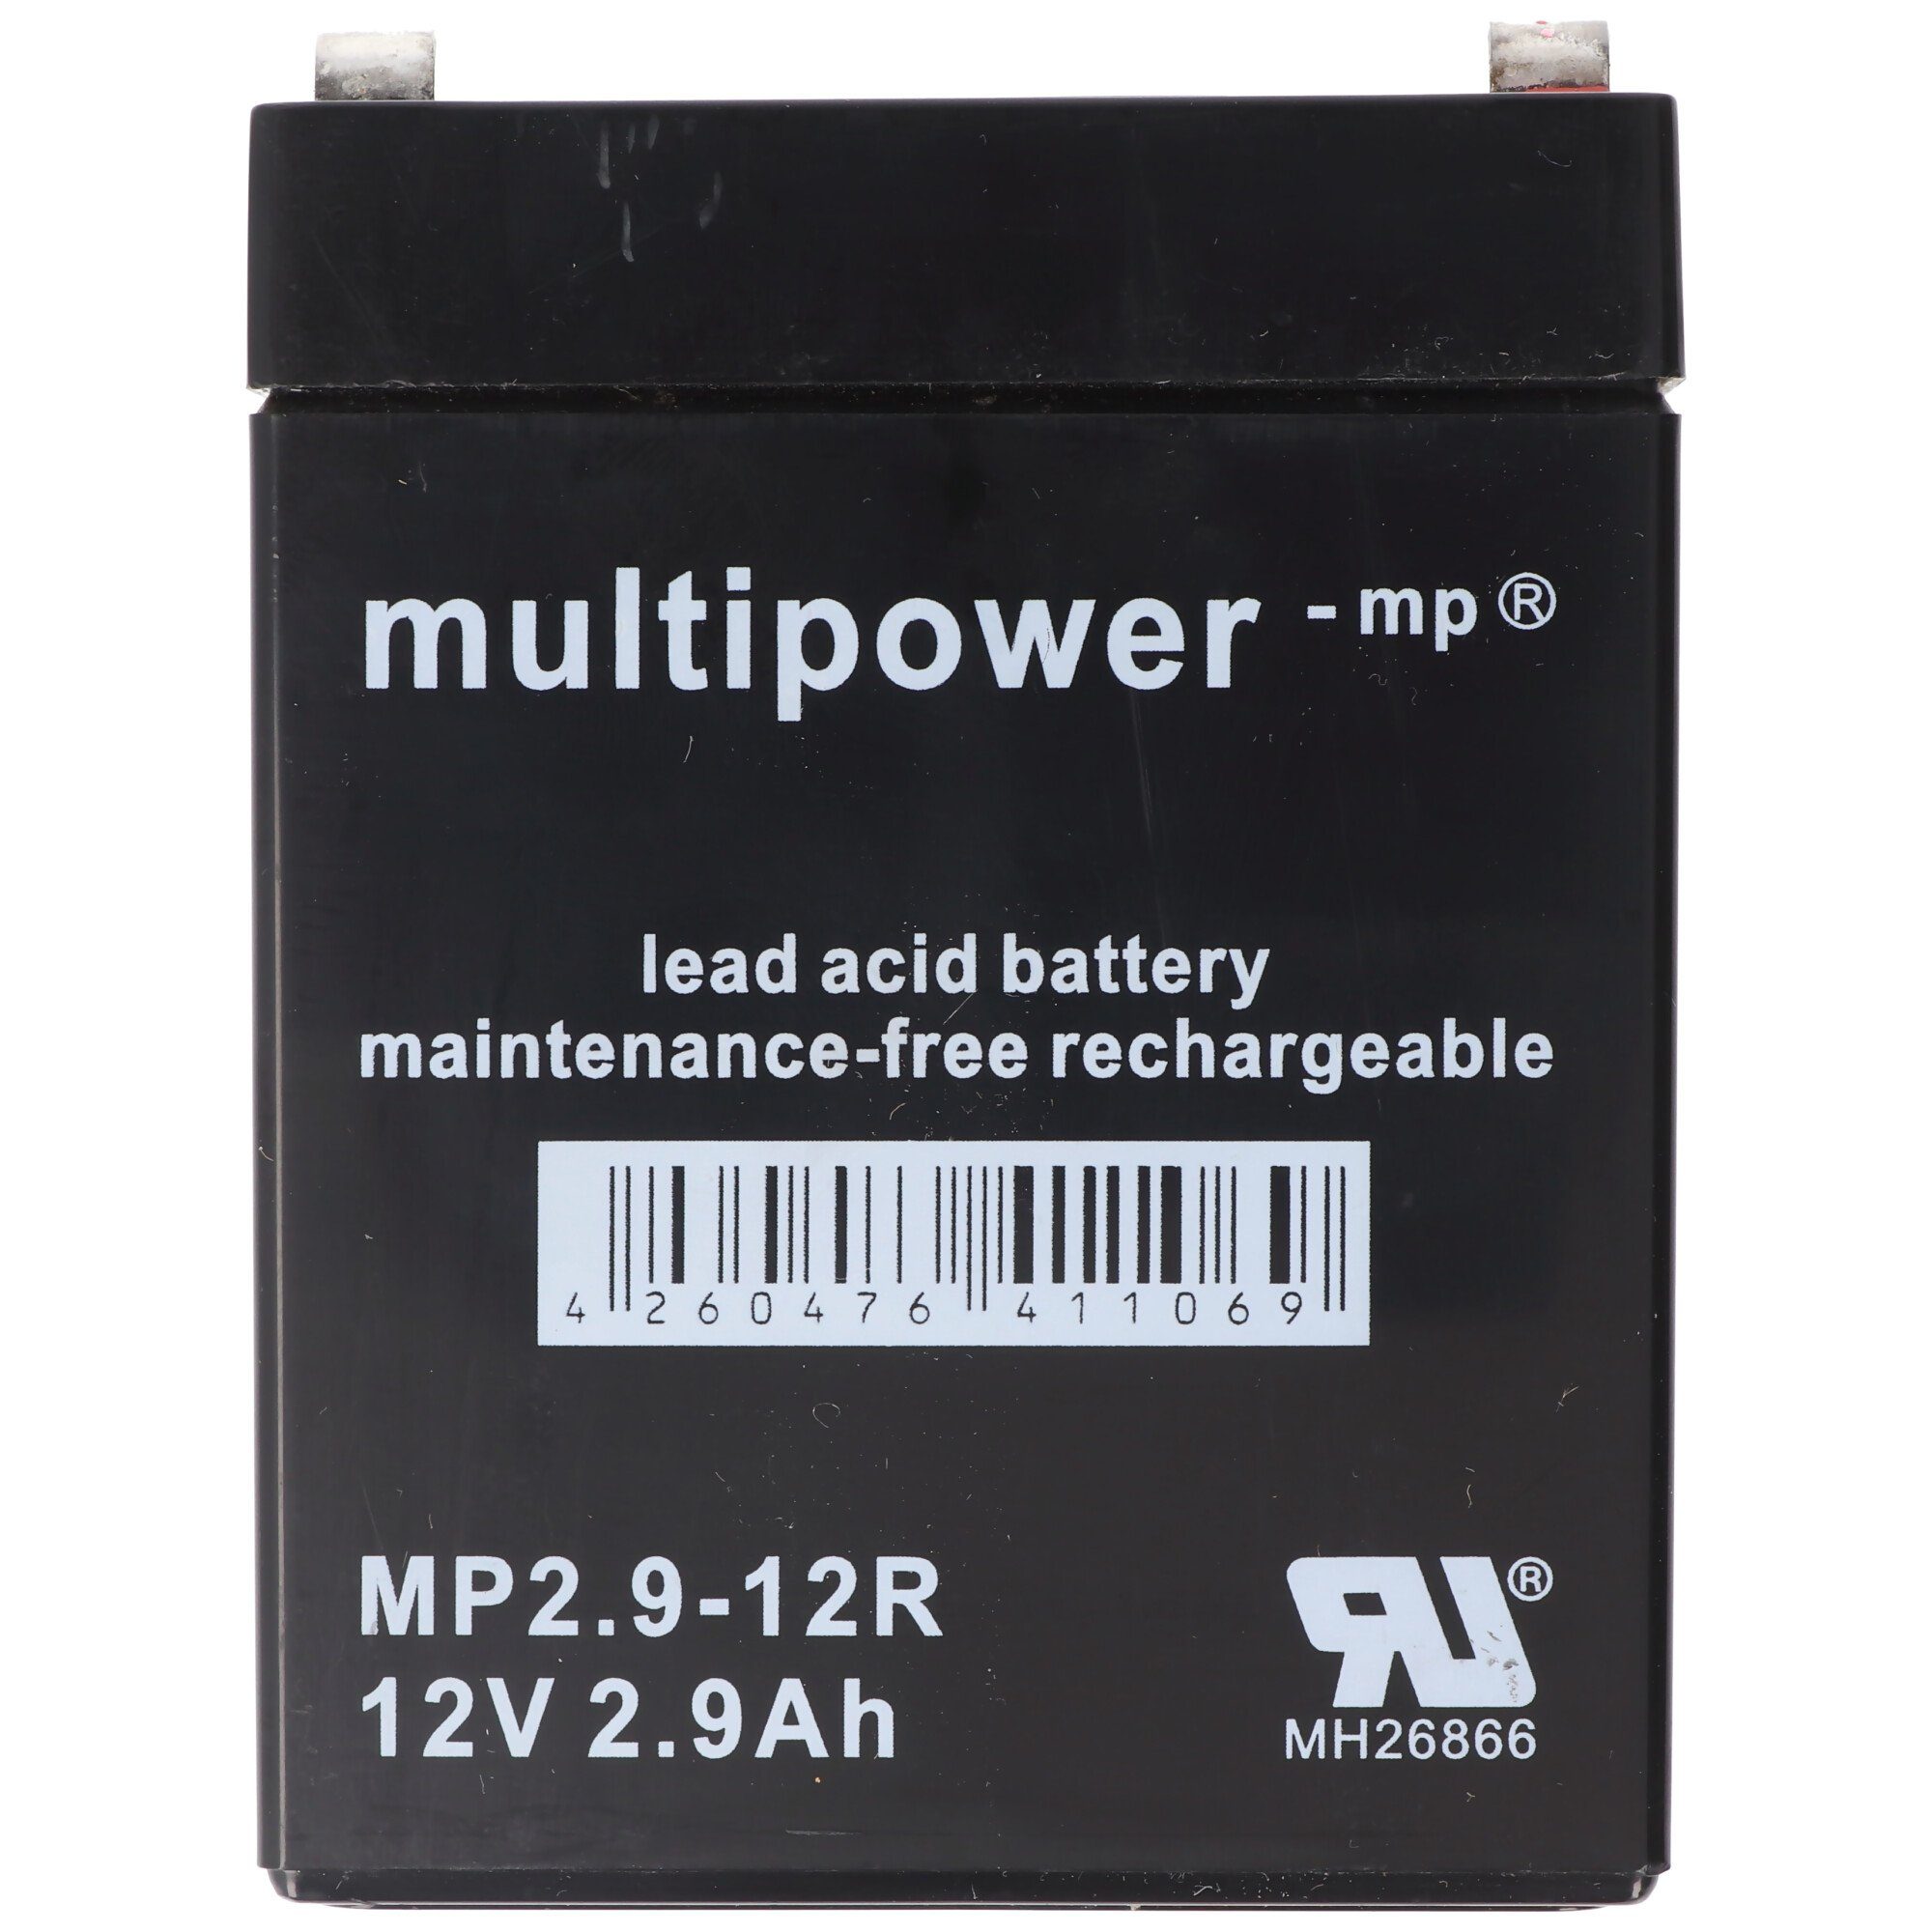 Multipower MultiPower MP2,9-12R mit Akku mAh 2900mAh mm 2900 Blei Faston Akku 12V, V) 4,8 (12,0